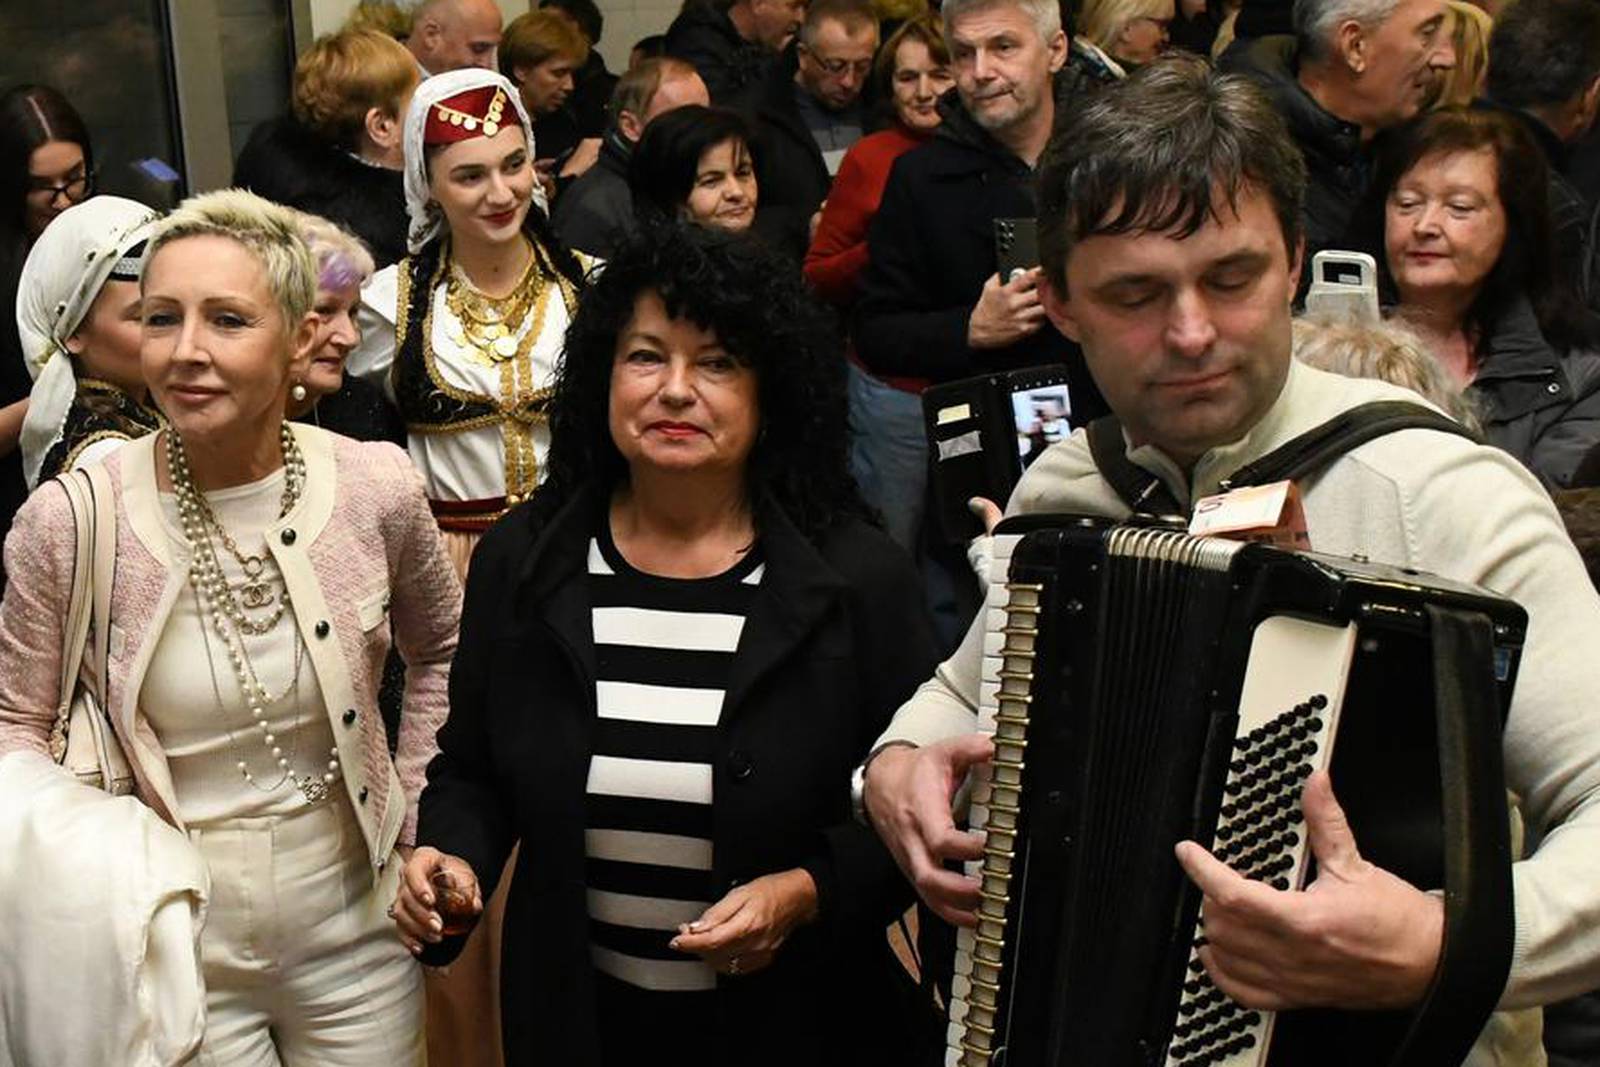 Bjelovar: Ambasadorica Srbije u RH Nj.E. Jelena Milić i Višnja Pevec pjevale i plesale kolo uz harmoniku